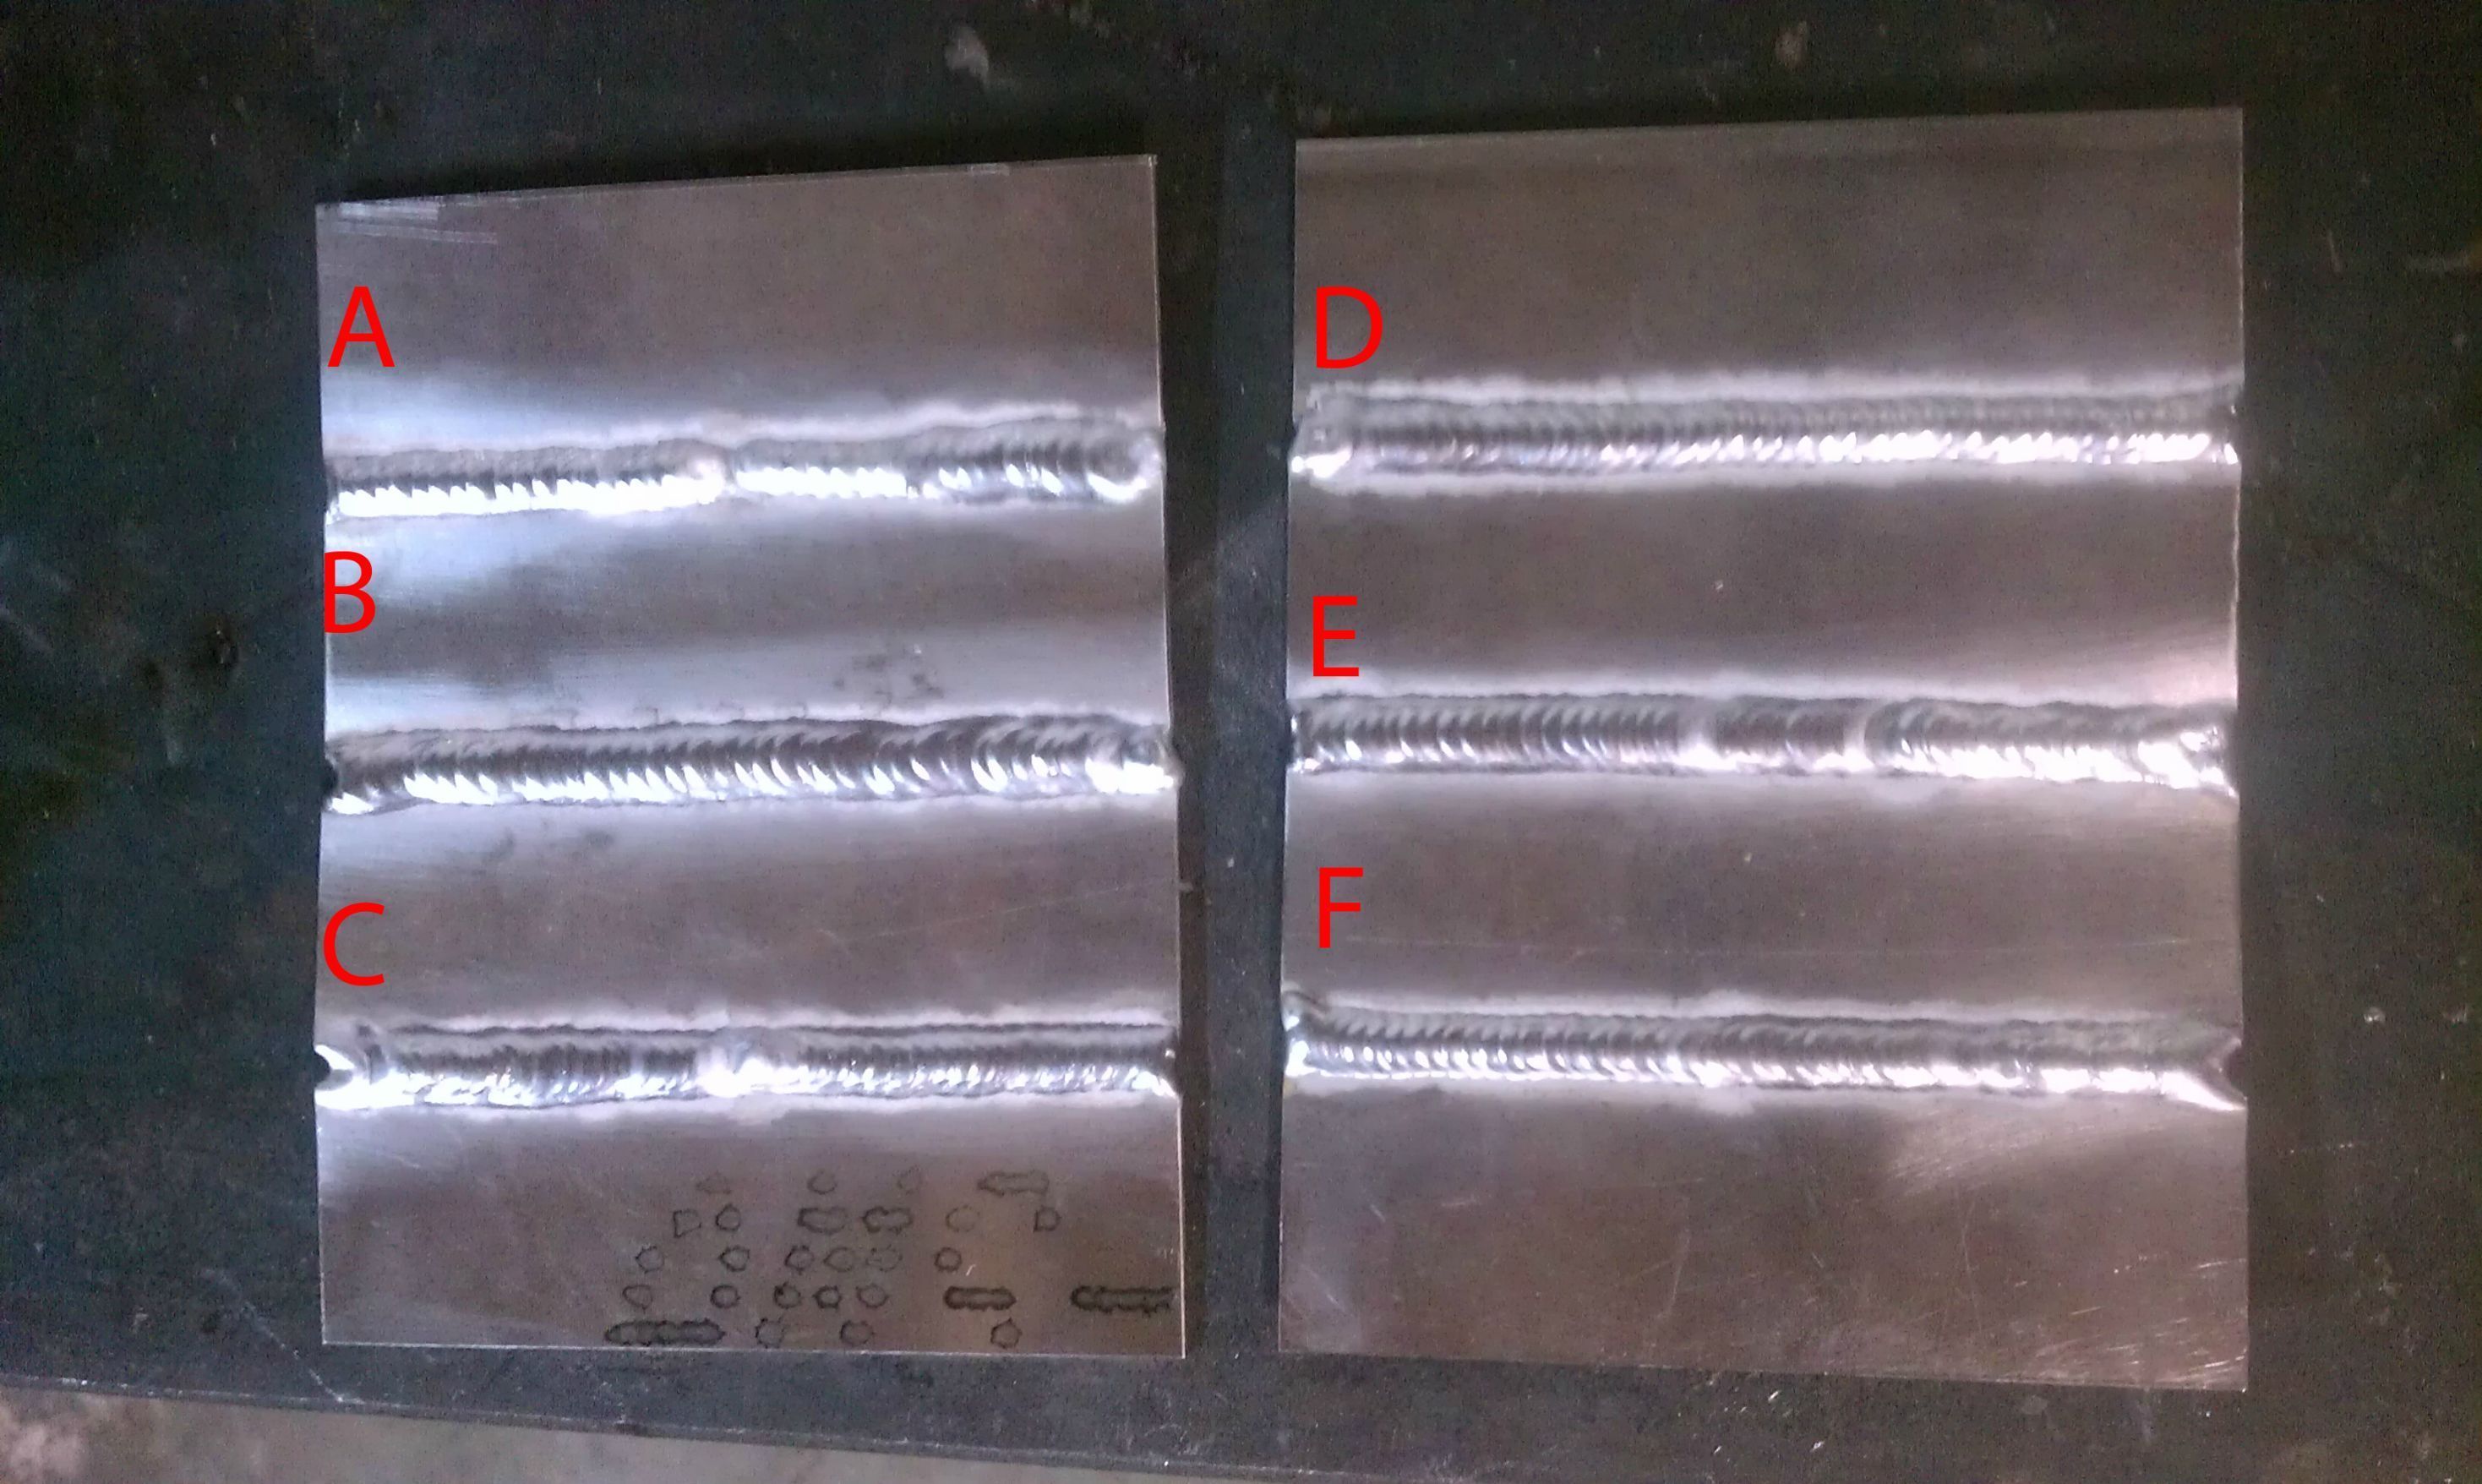 Penetration in tig welding